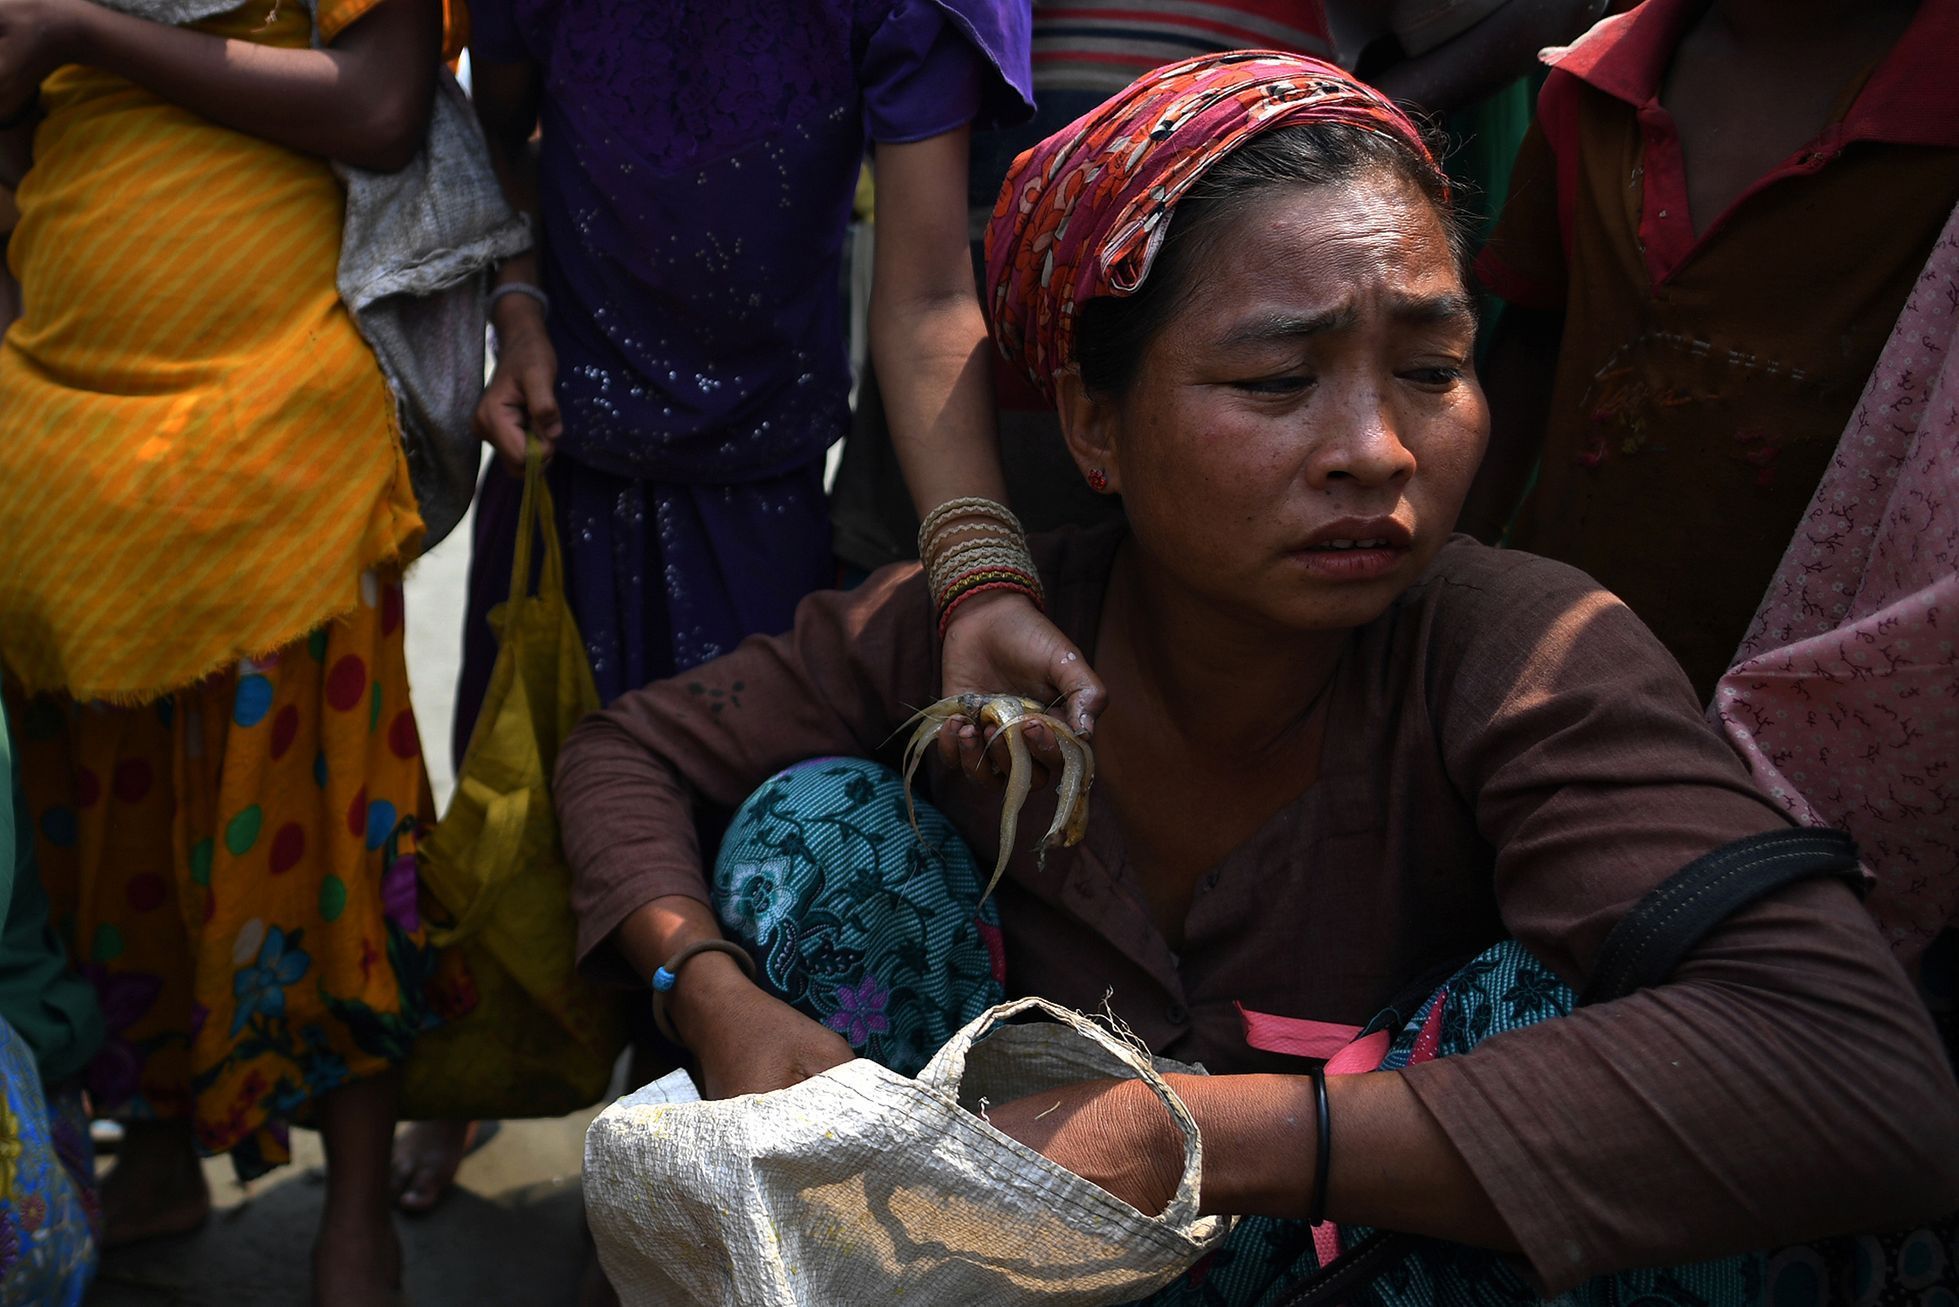 Fotogalerie / Rohingové v Bangladéši / Reuters / 19